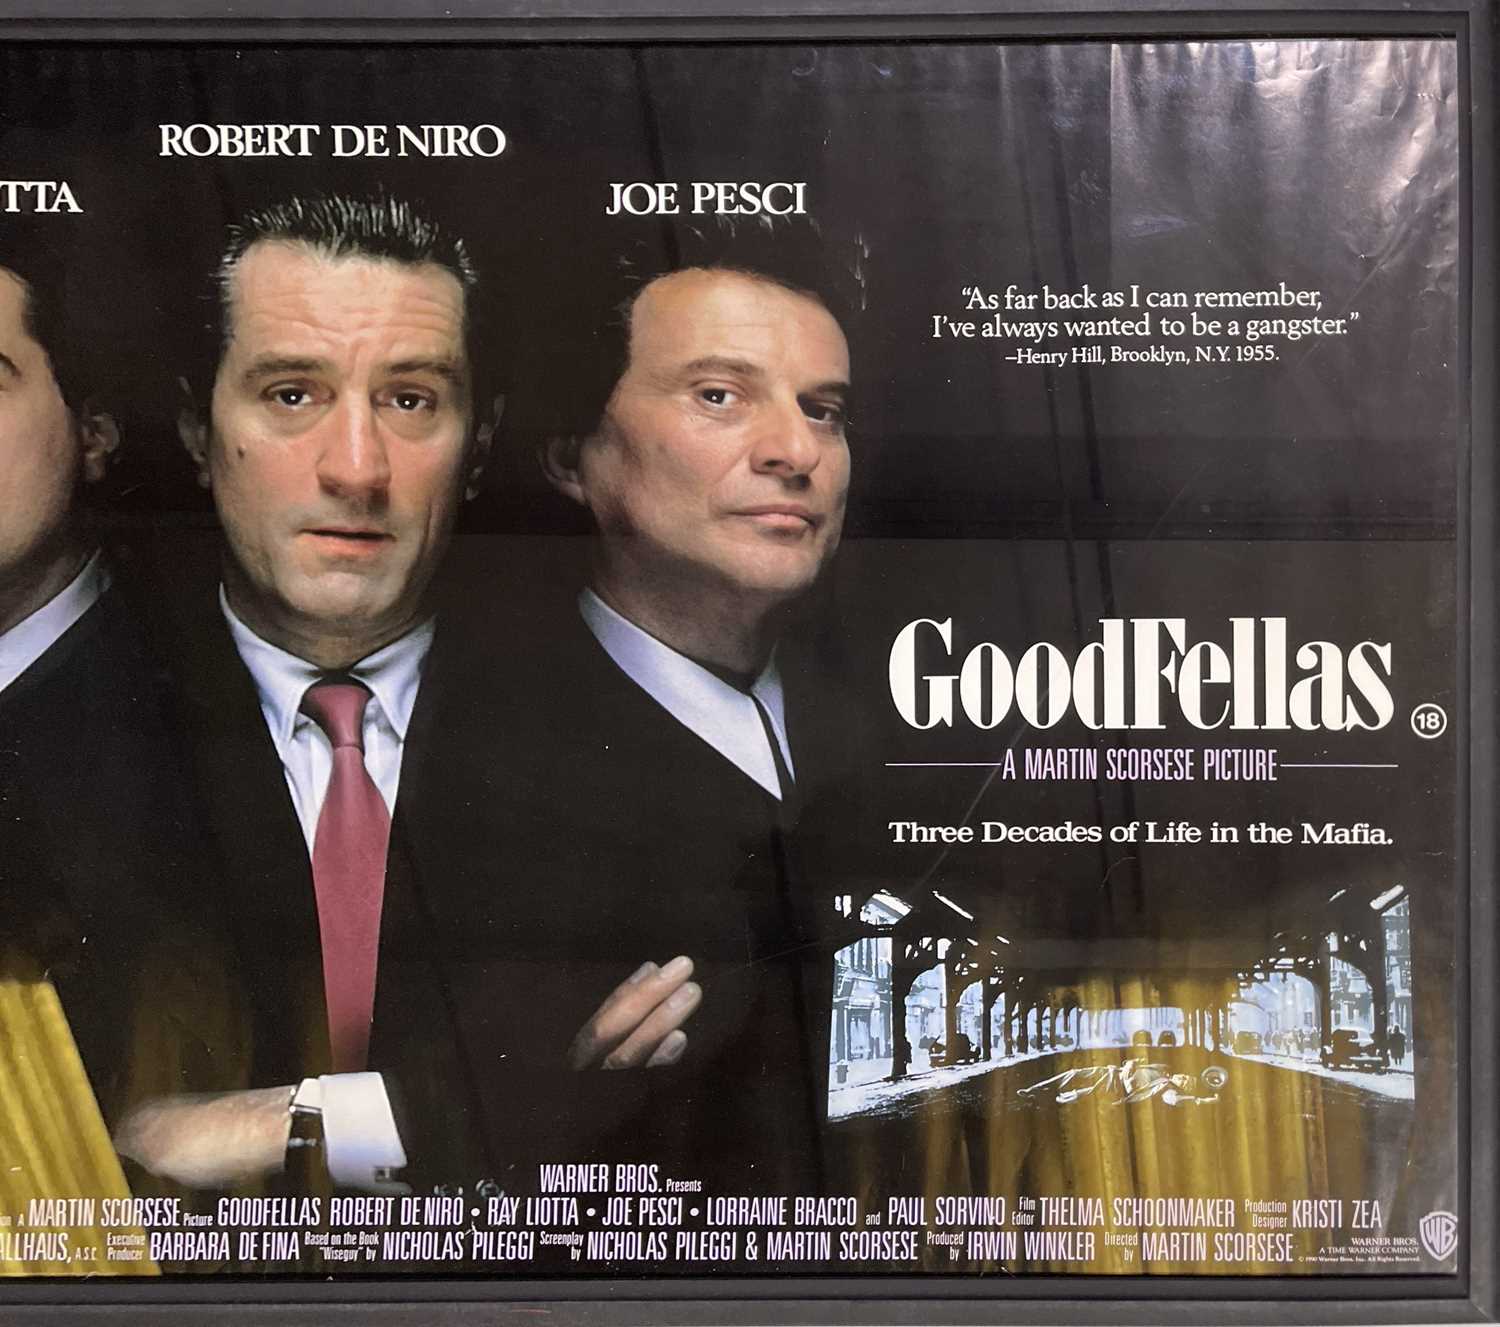 GOODFELLAS (1990) ORIGINAL UK QUAD POSTER. - Image 2 of 4